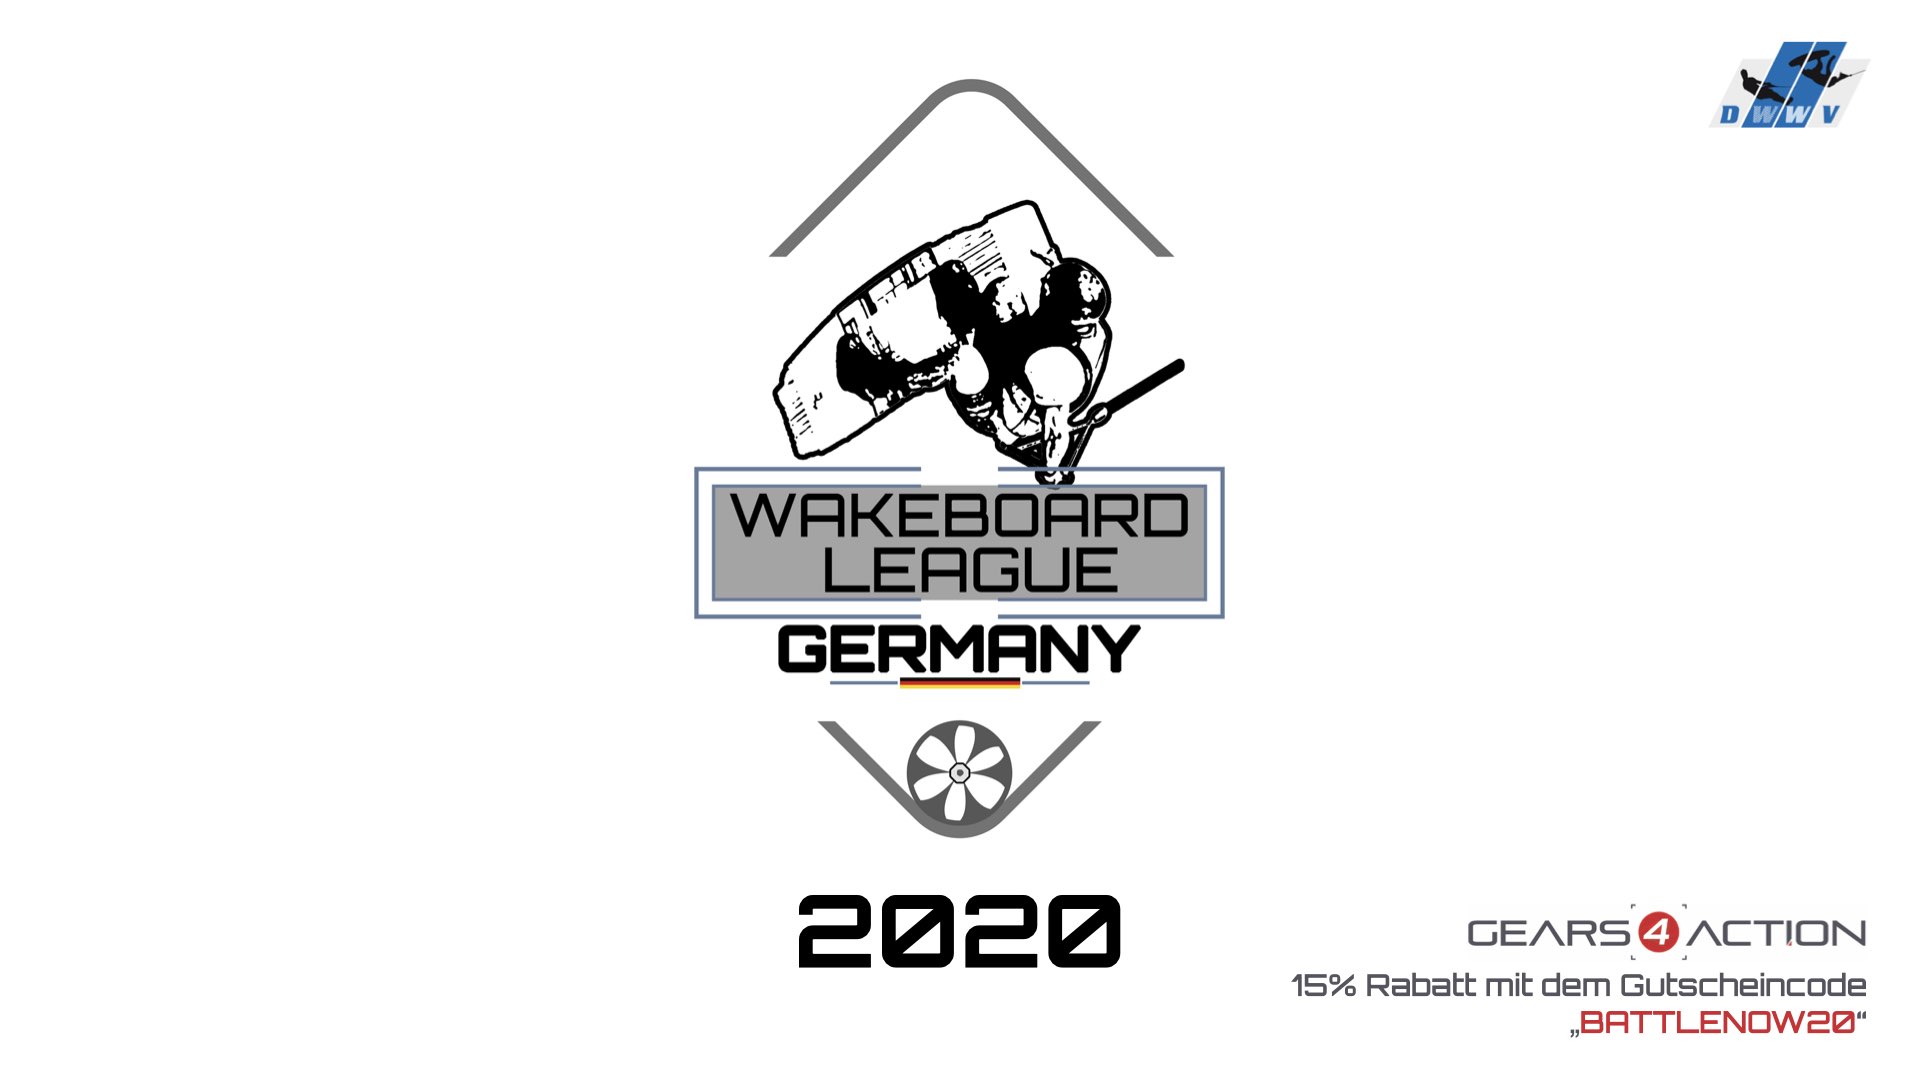 DWWV Wakeboard League Germany - Battle 9 - Best Kicker-Trick